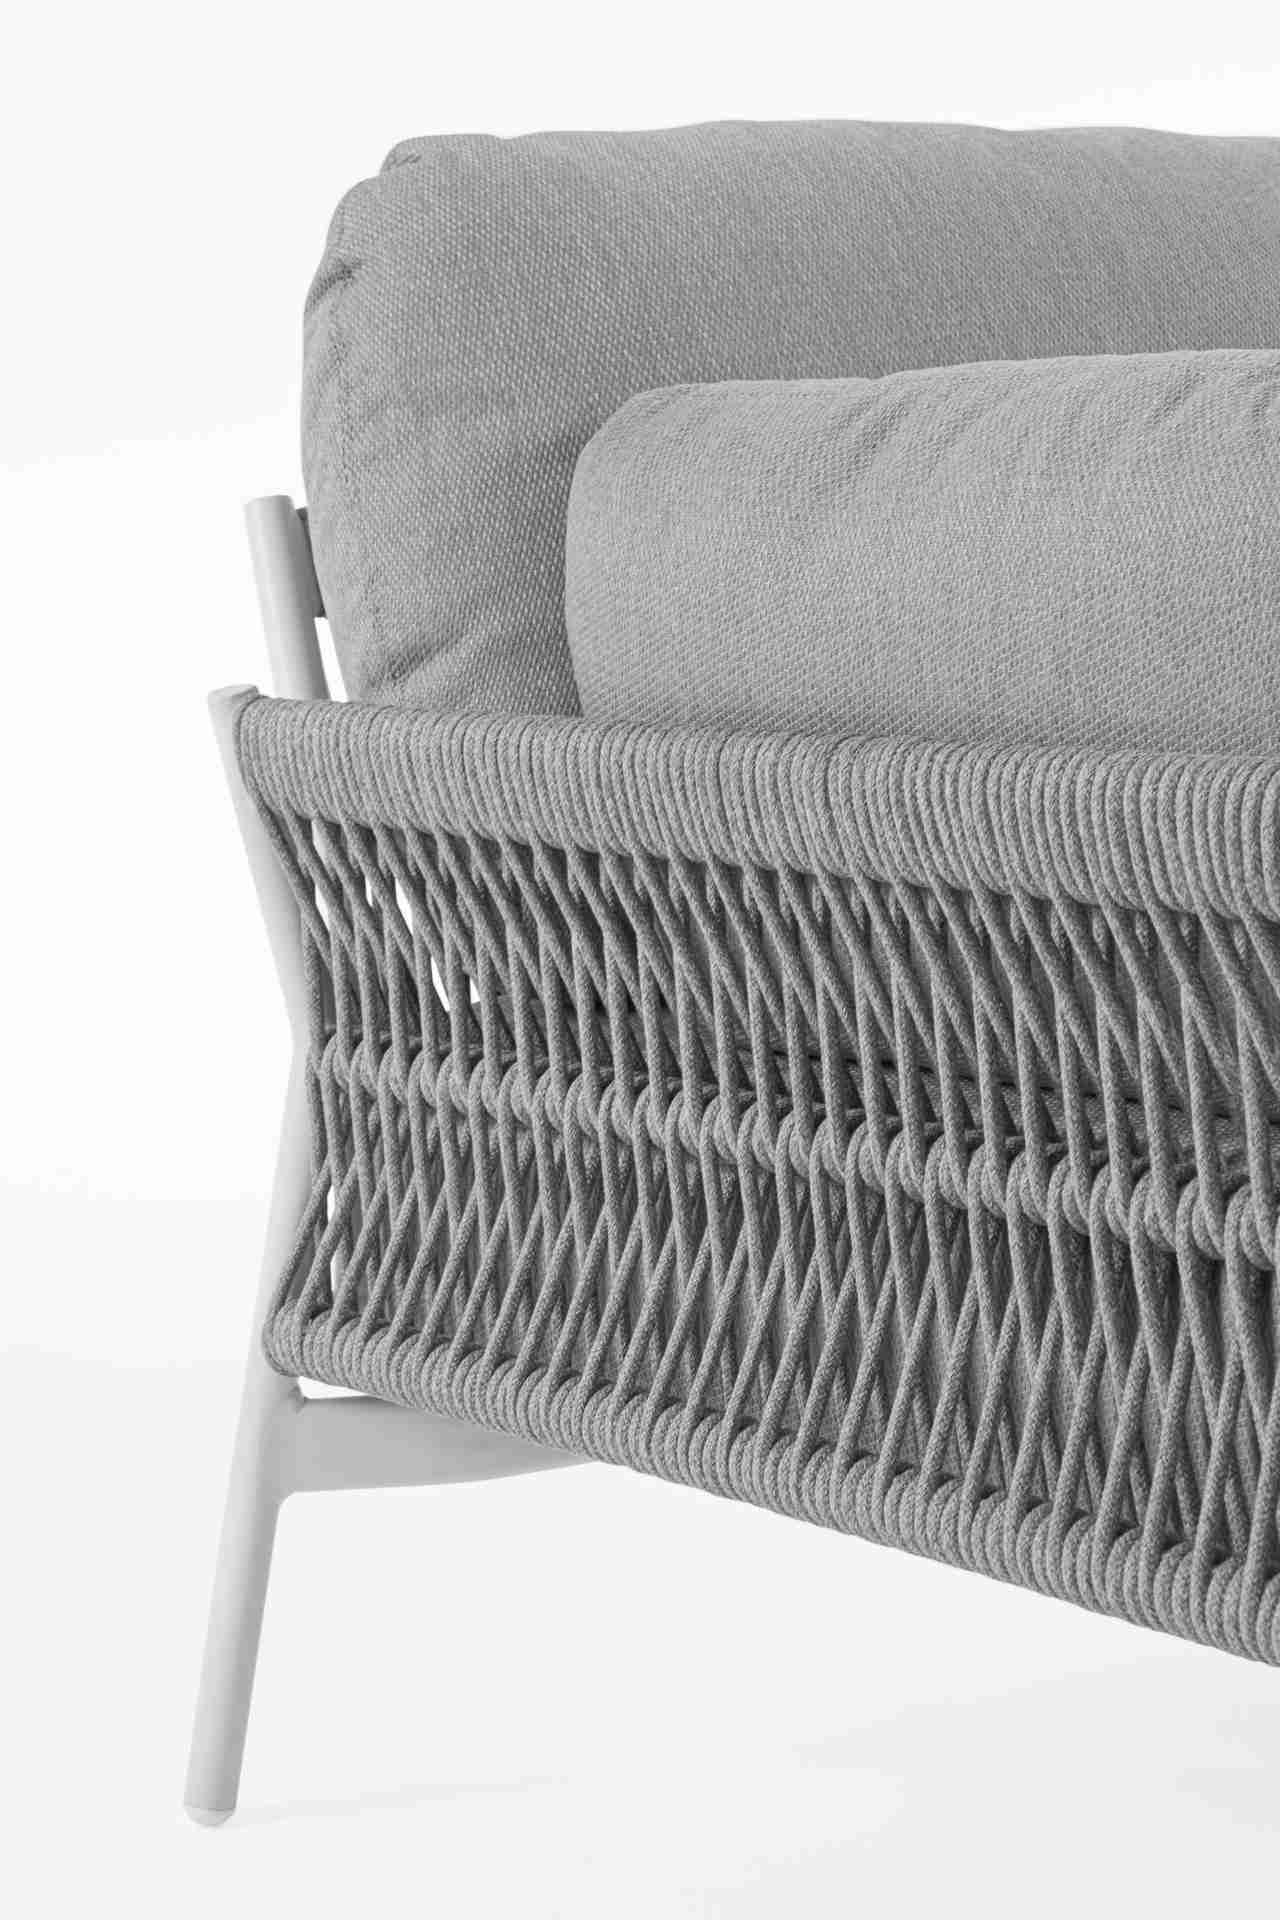 Der Gartensessel Pardis überzeugt mit seinem modernen Design. Gefertigt wurde er aus Olefin-Stoff, welcher einen grauen Farbton besitzt. Das Gestell ist aus Aluminium und hat eine weiße Farbe. Der Sessel verfügt über eine Sitzhöhe von 38 cm und ist für de